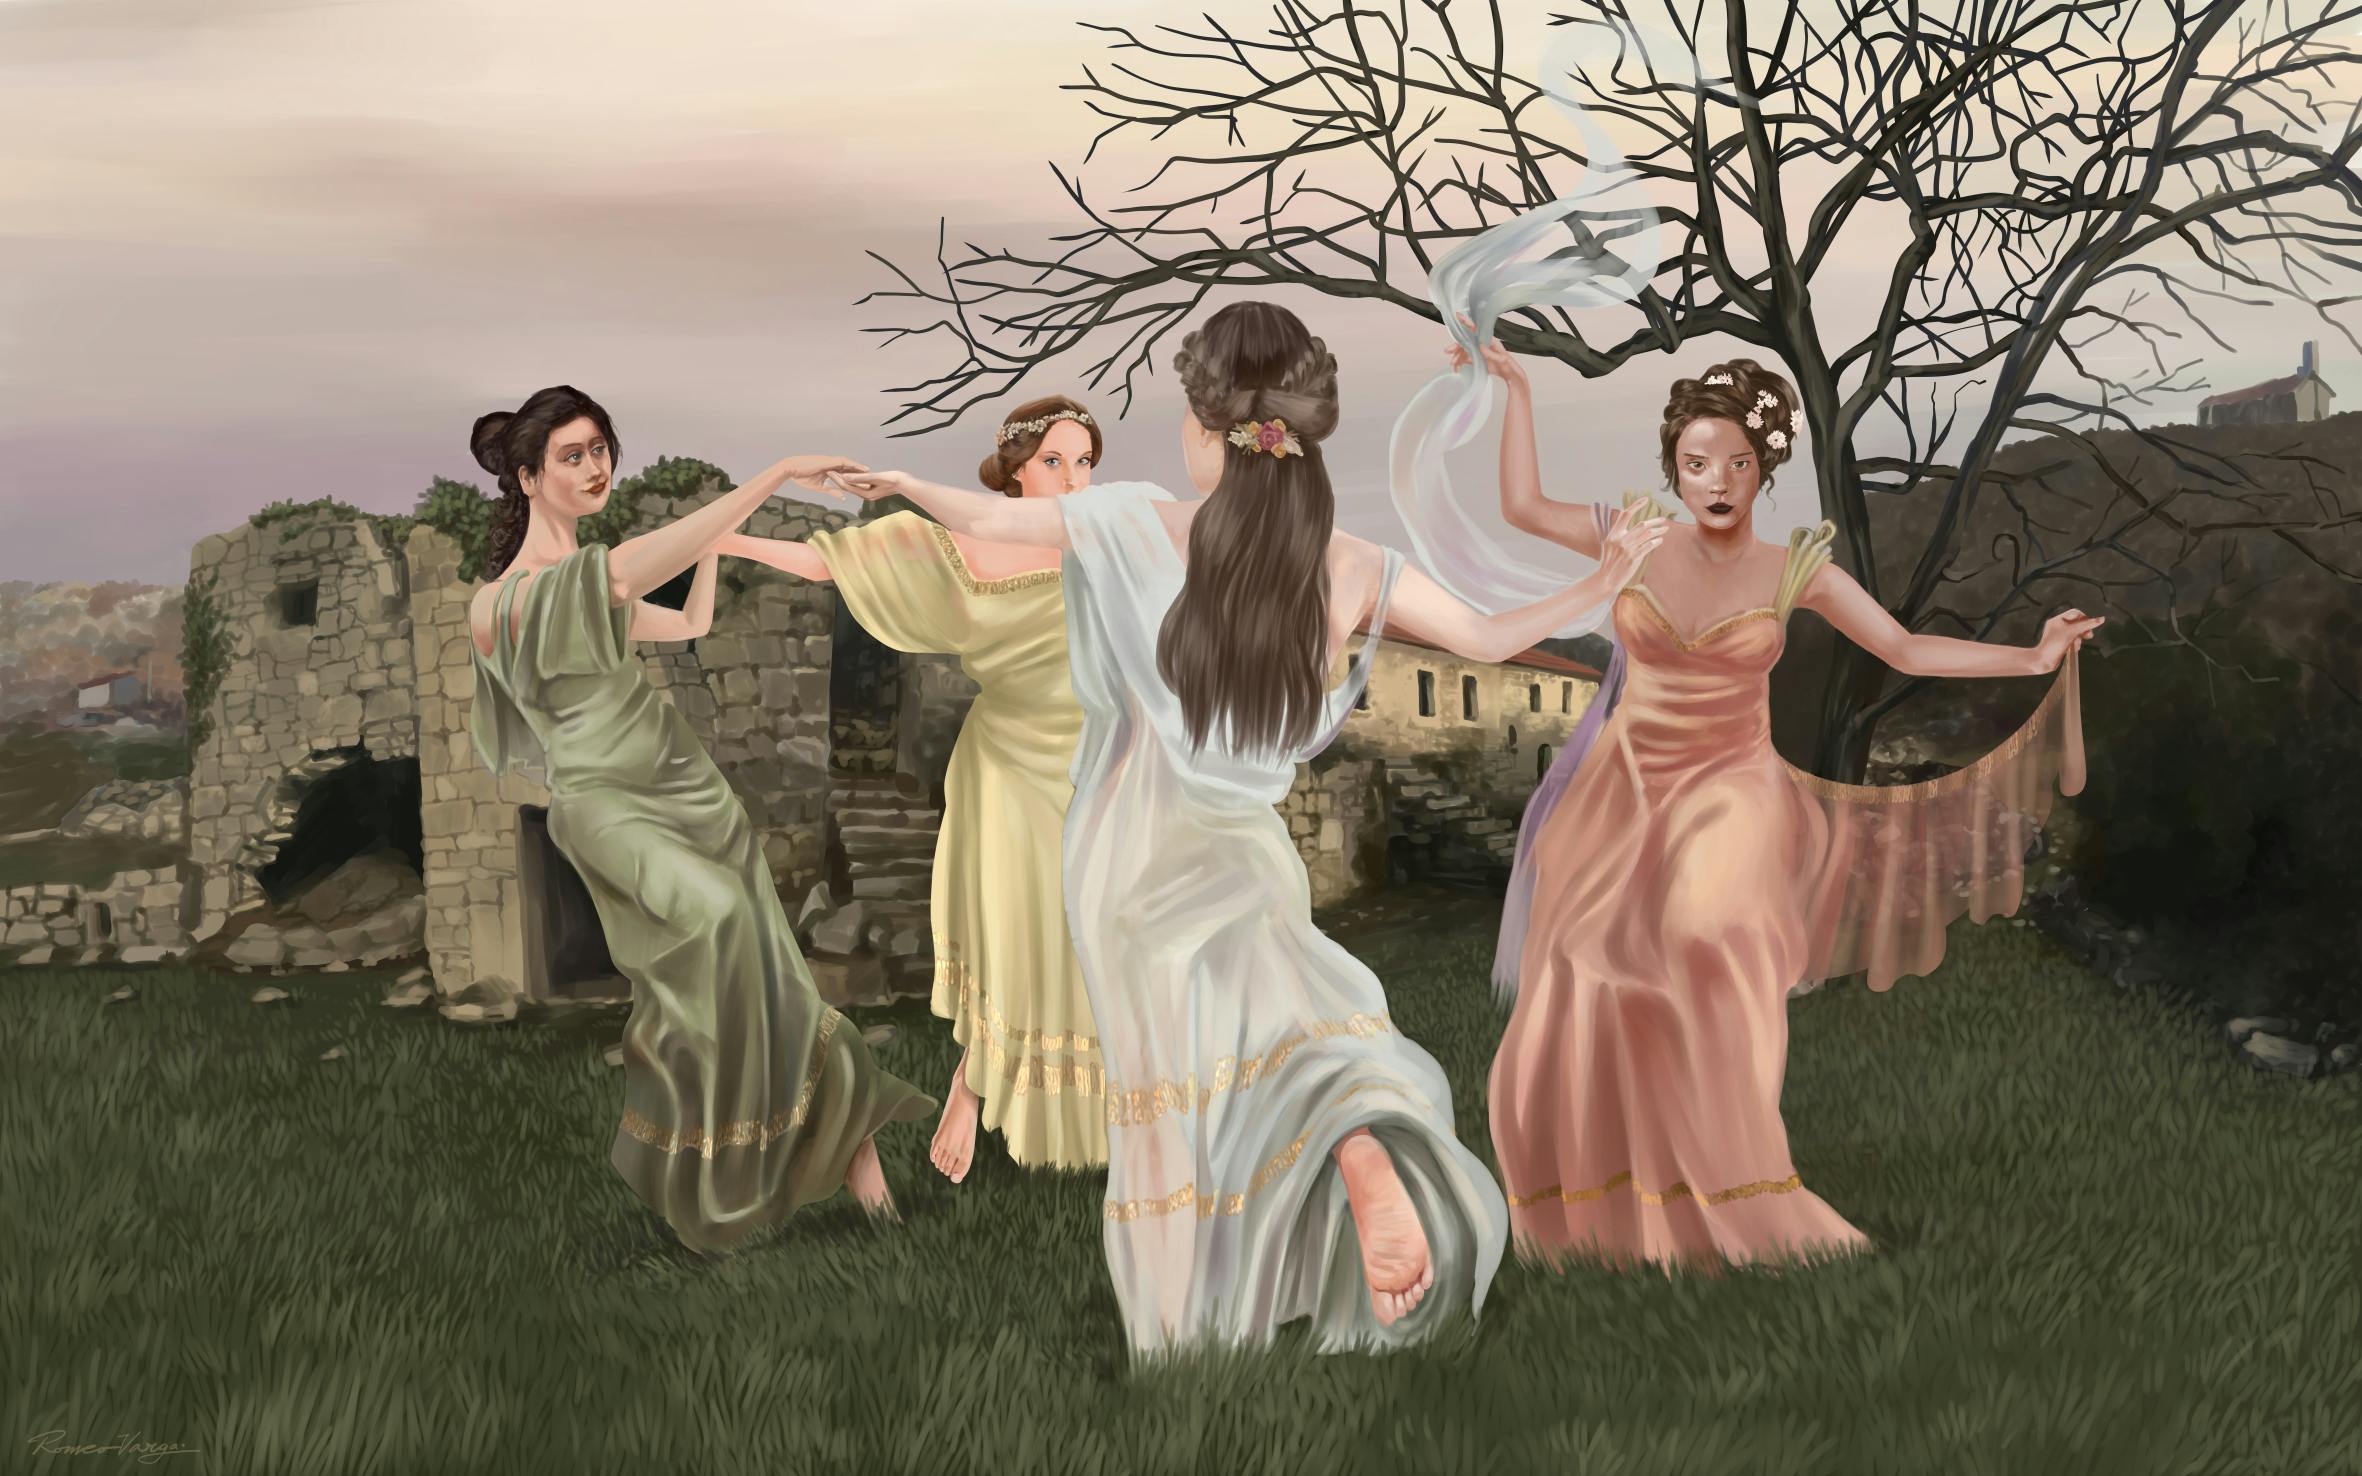 Ladies dancing in a field